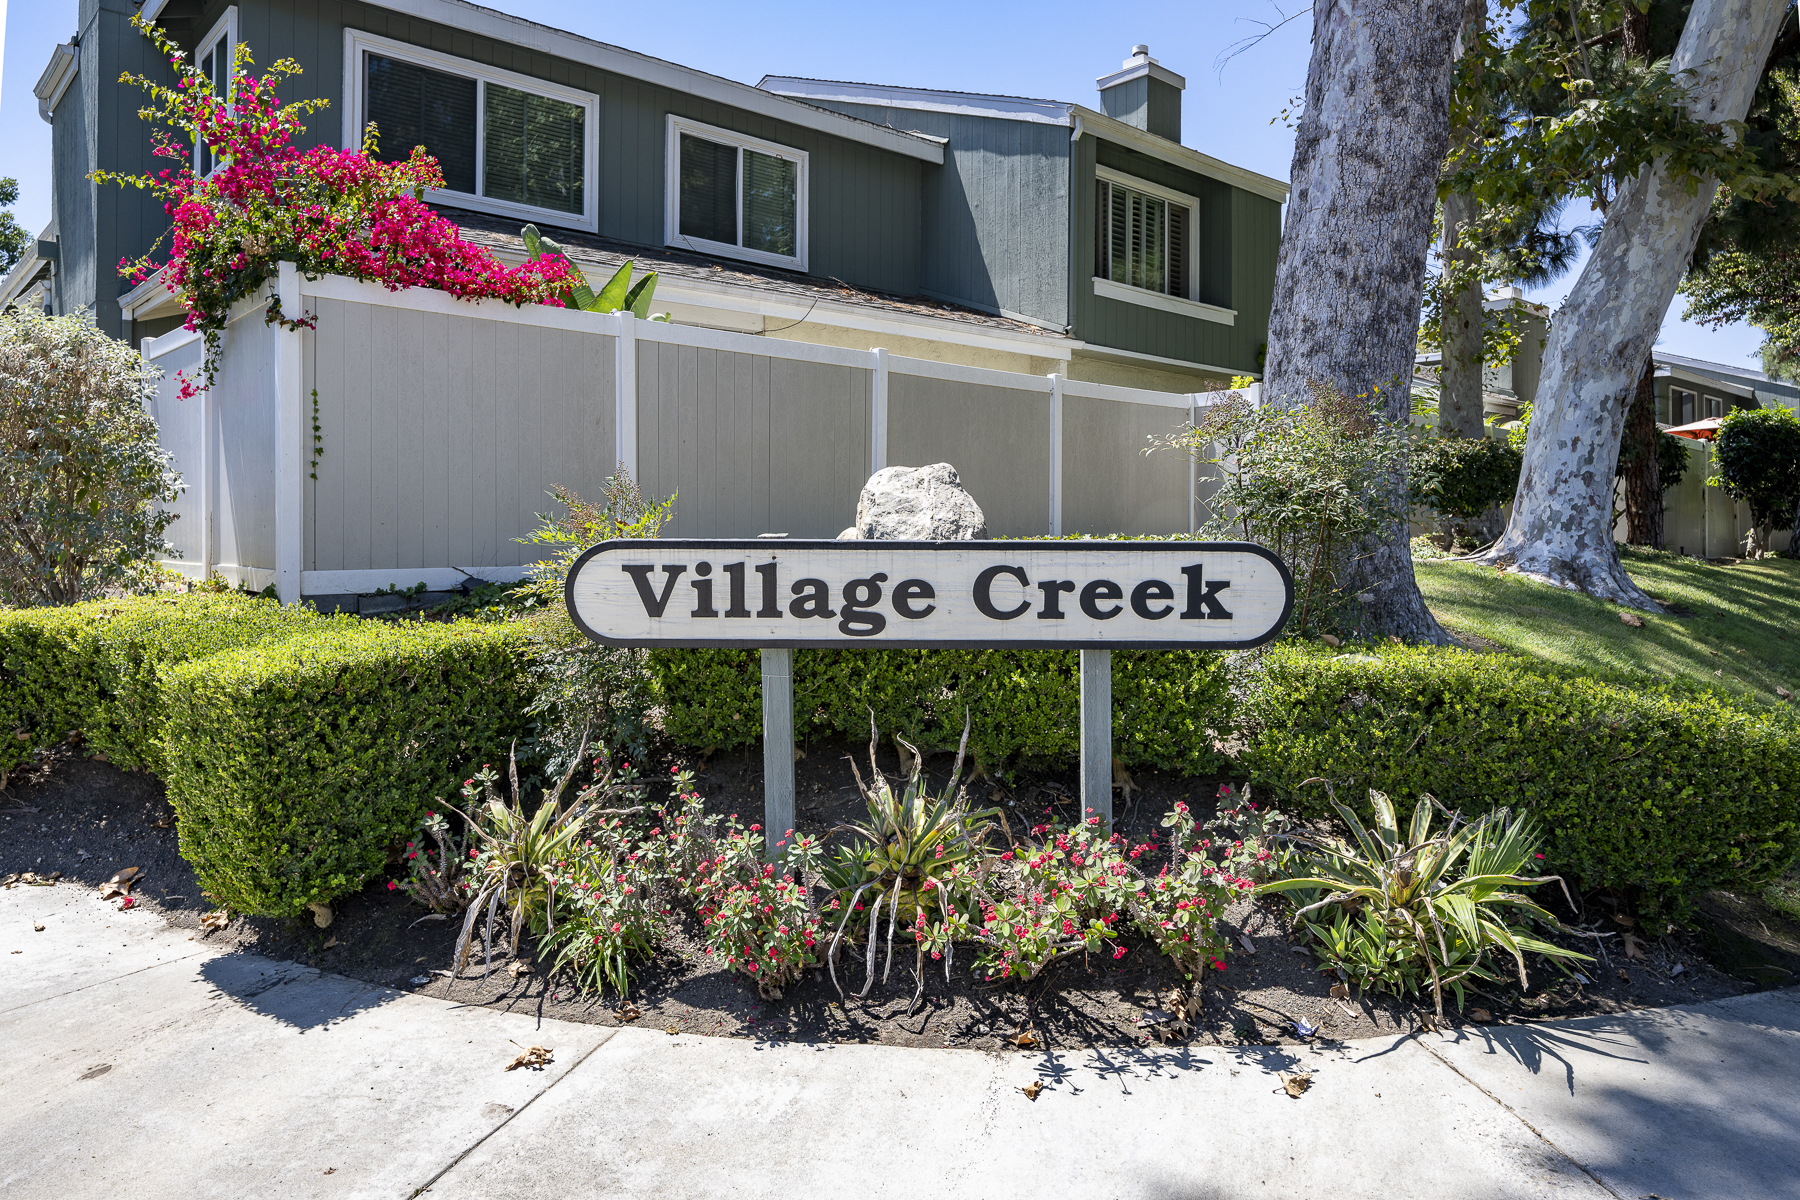 3424 Pinebrook Costa Mesa CA 92626: Village Creek sign.